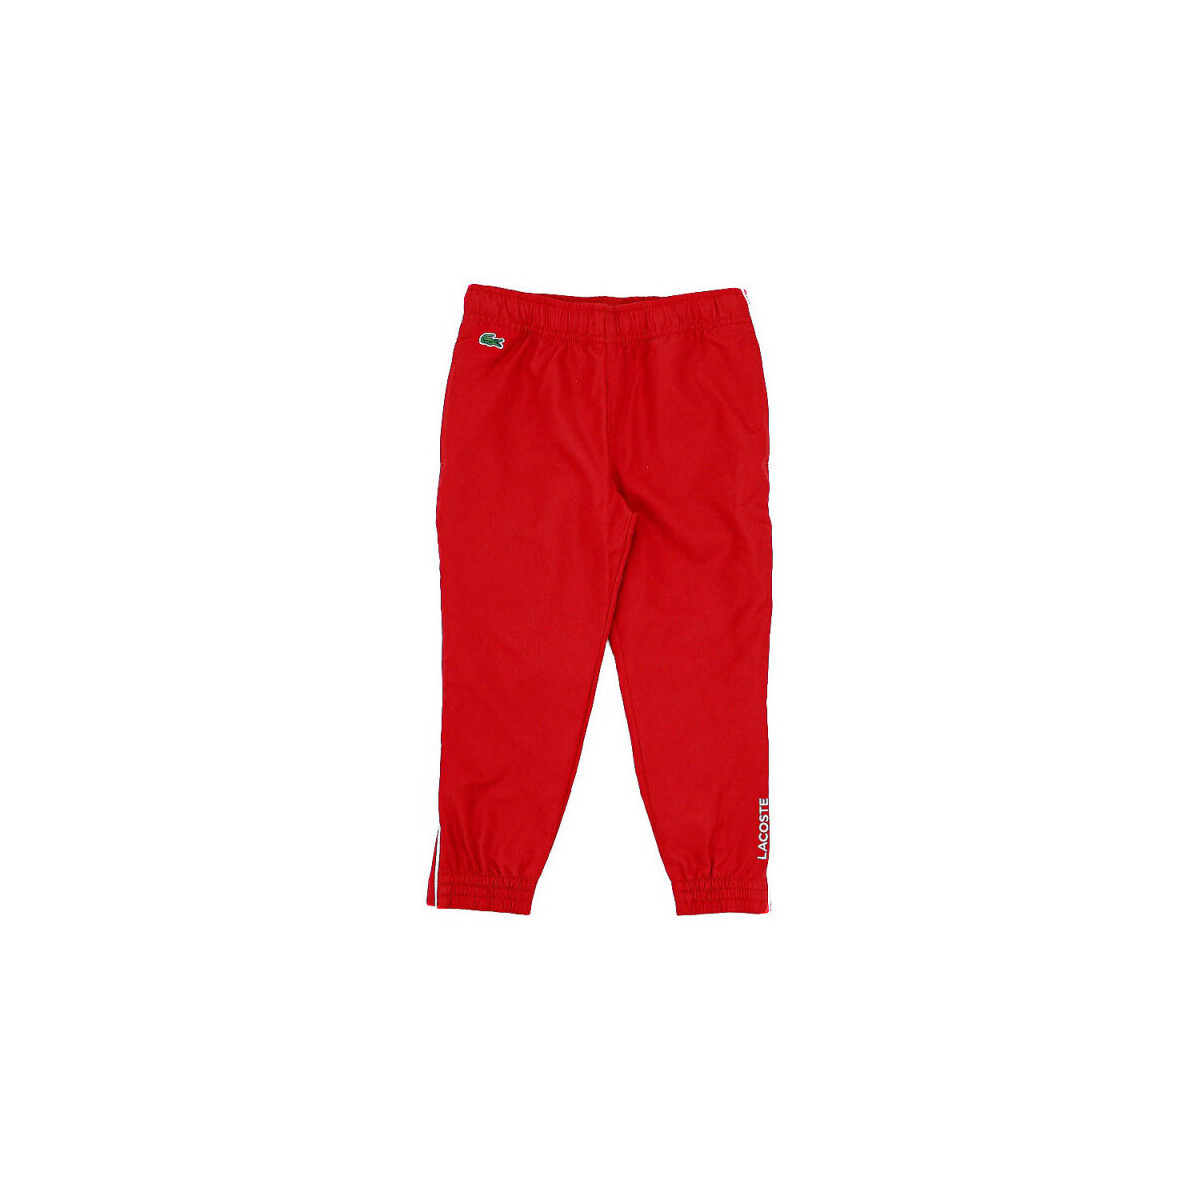 Vêtements Enfant Pantalons Lacoste Pantalon de survêtement Enfant  SPORT léger avec pipi Rouge